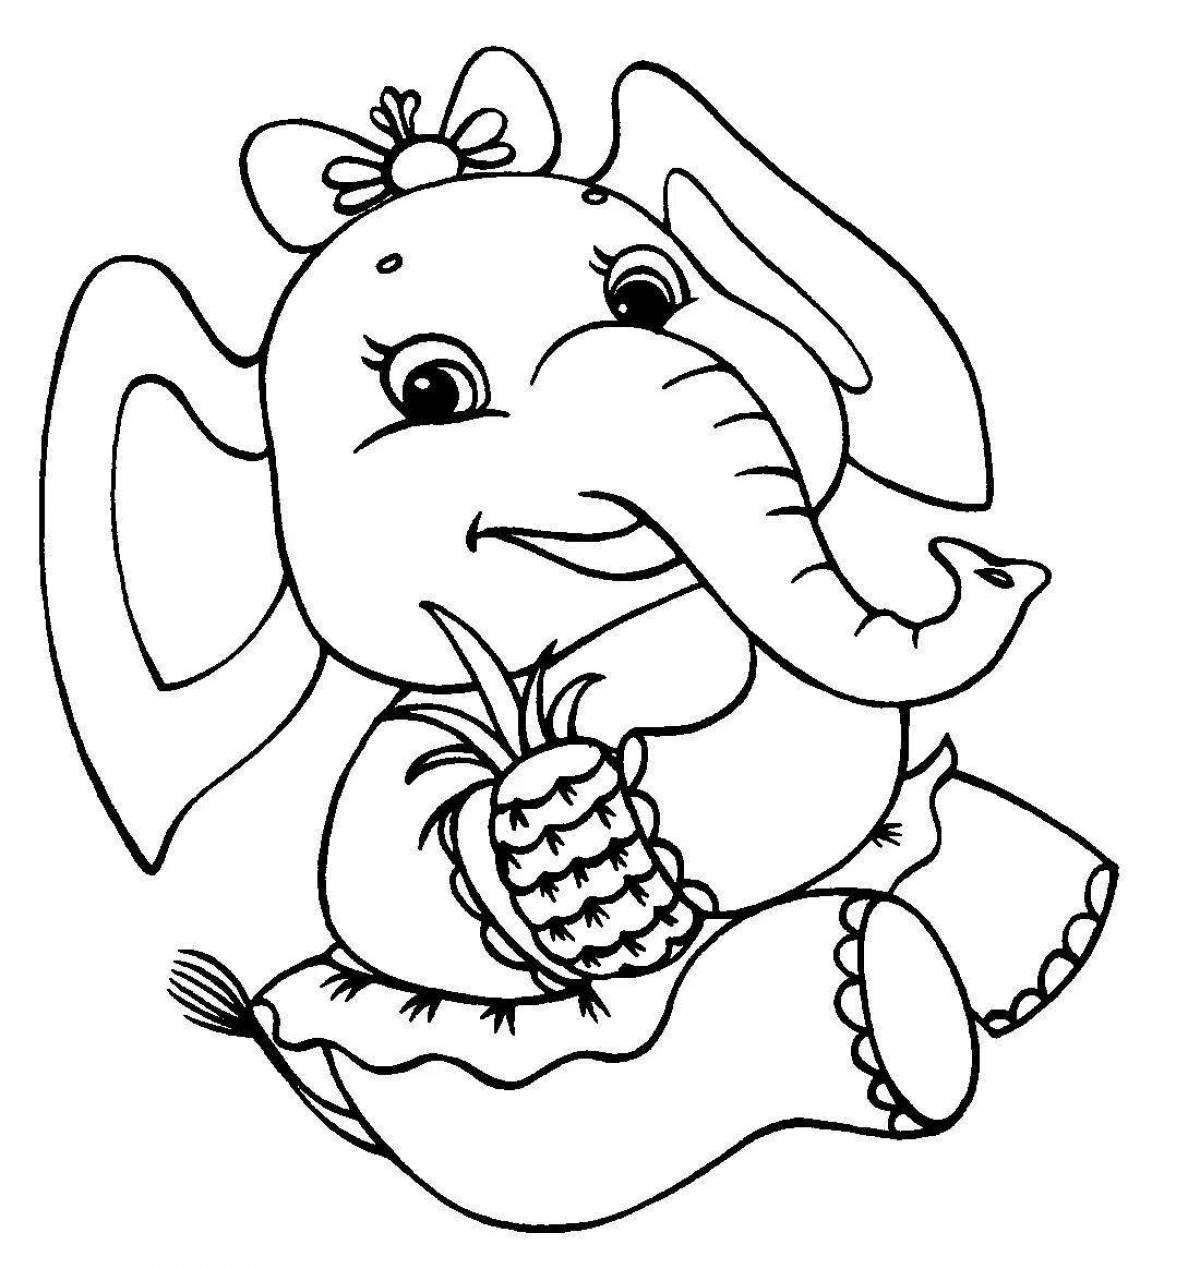 Сказочная раскраска слона для детей